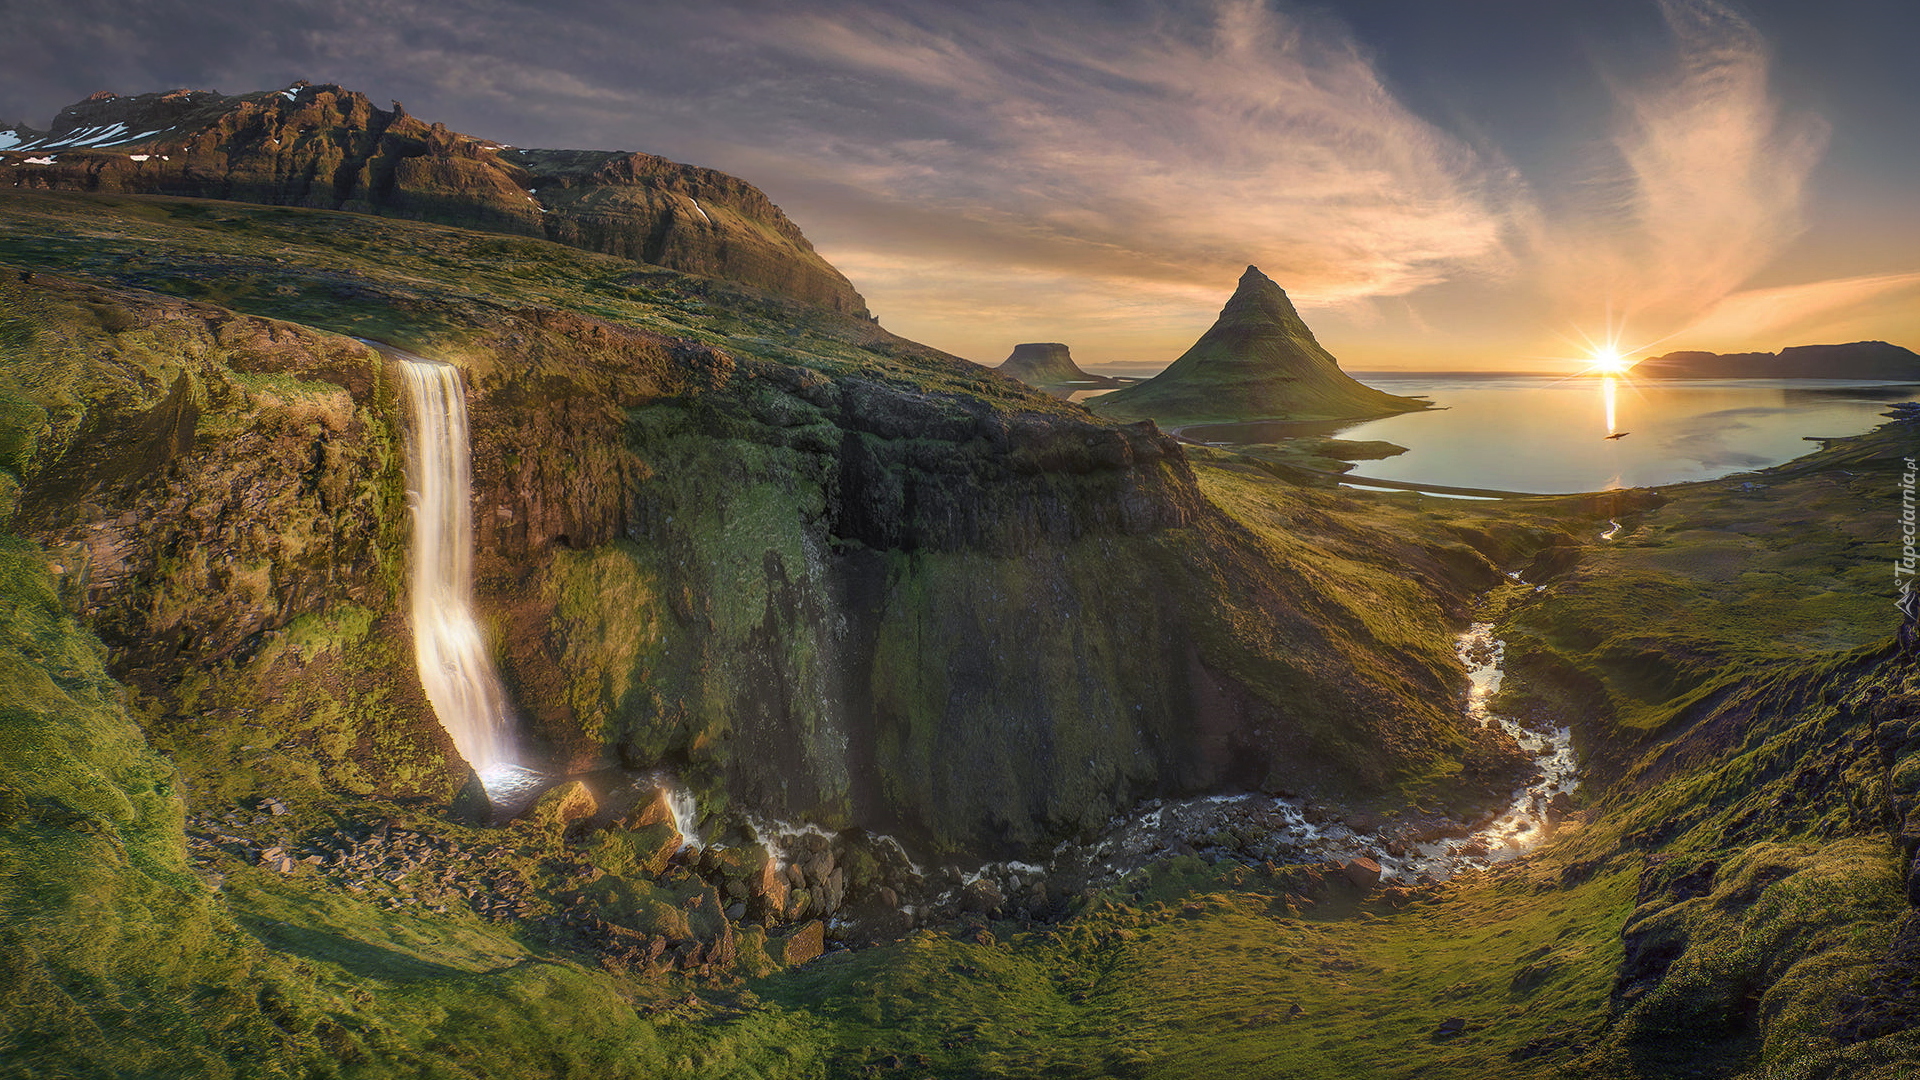 Wodospad, Rzeka, Góra Kirkjufell, Chmury, Promienie słońca, Półwysep Snafellsnes, Islandia